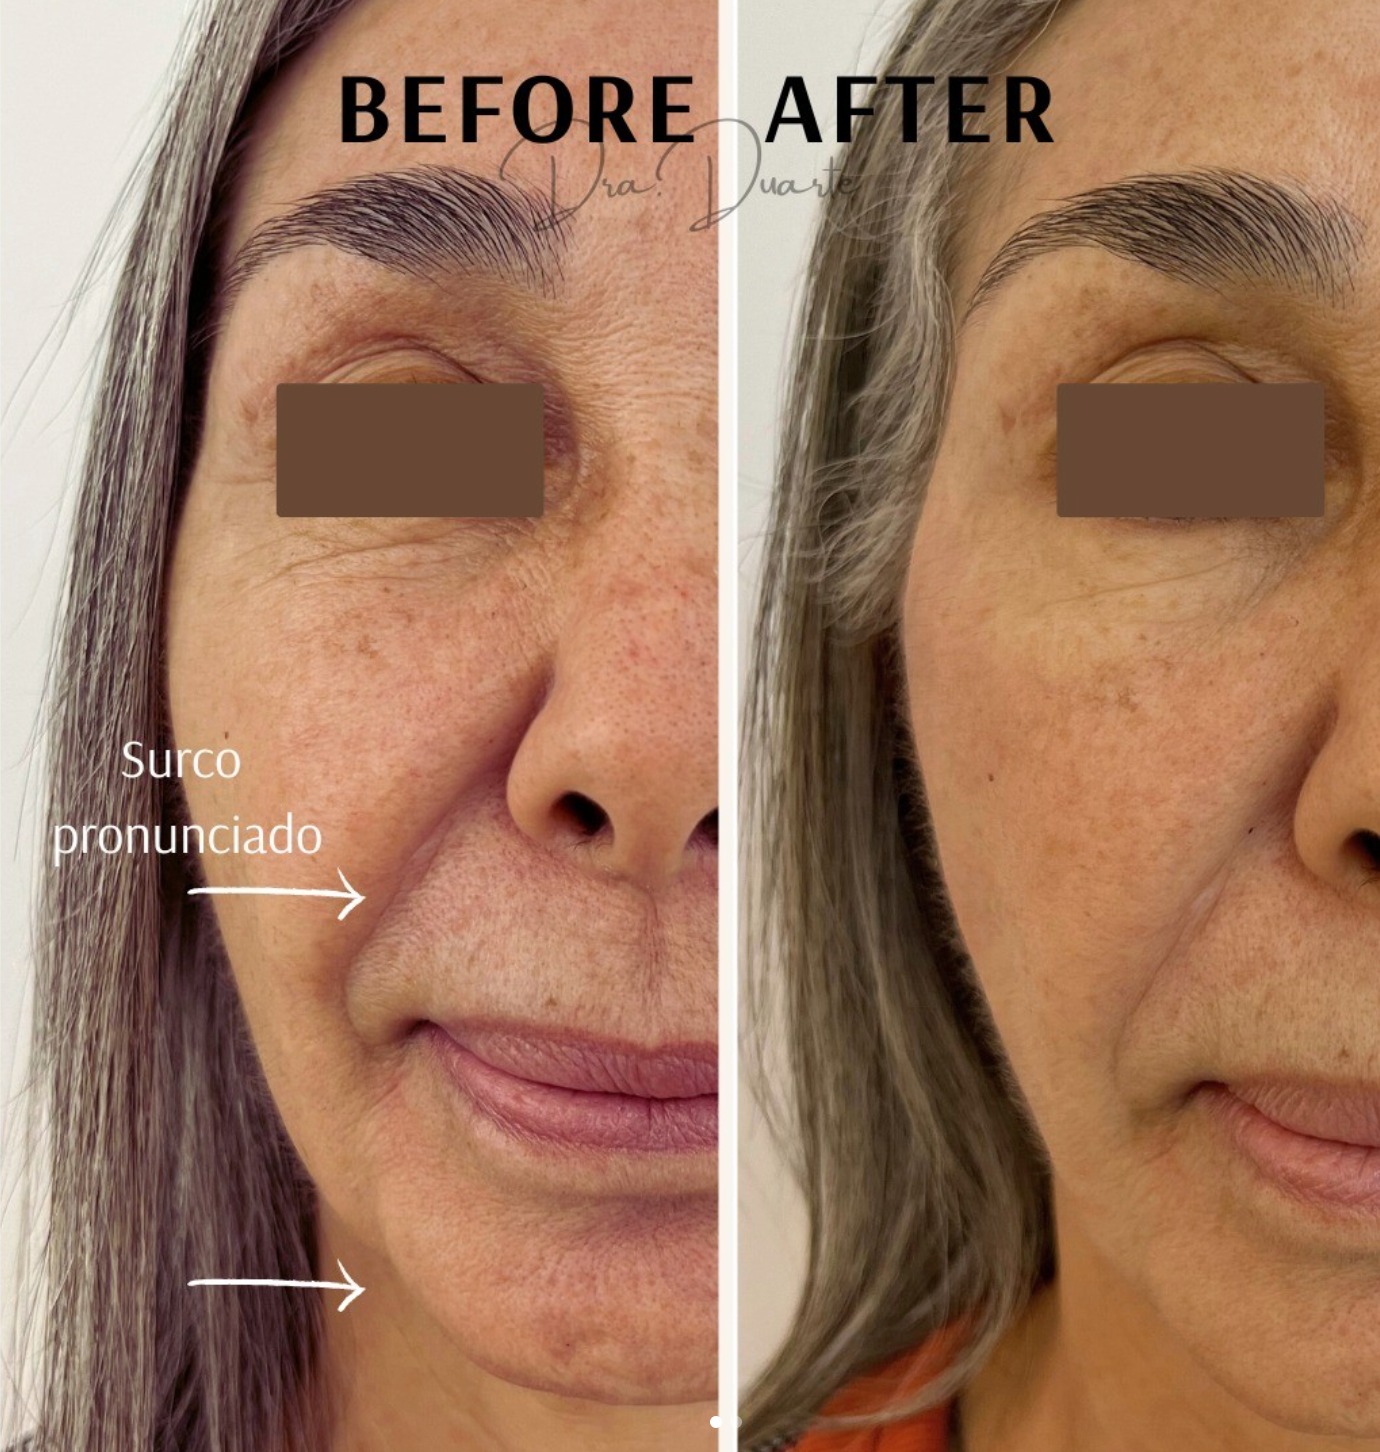 Resultados visibles de lifting facial con hilos tensores realizados por la Dra. Duarte en Armenia, mostrando una reducción notable de surcos nasolabiales y mejora en la firmeza de la piel para un rejuvenecimiento facial notorio.